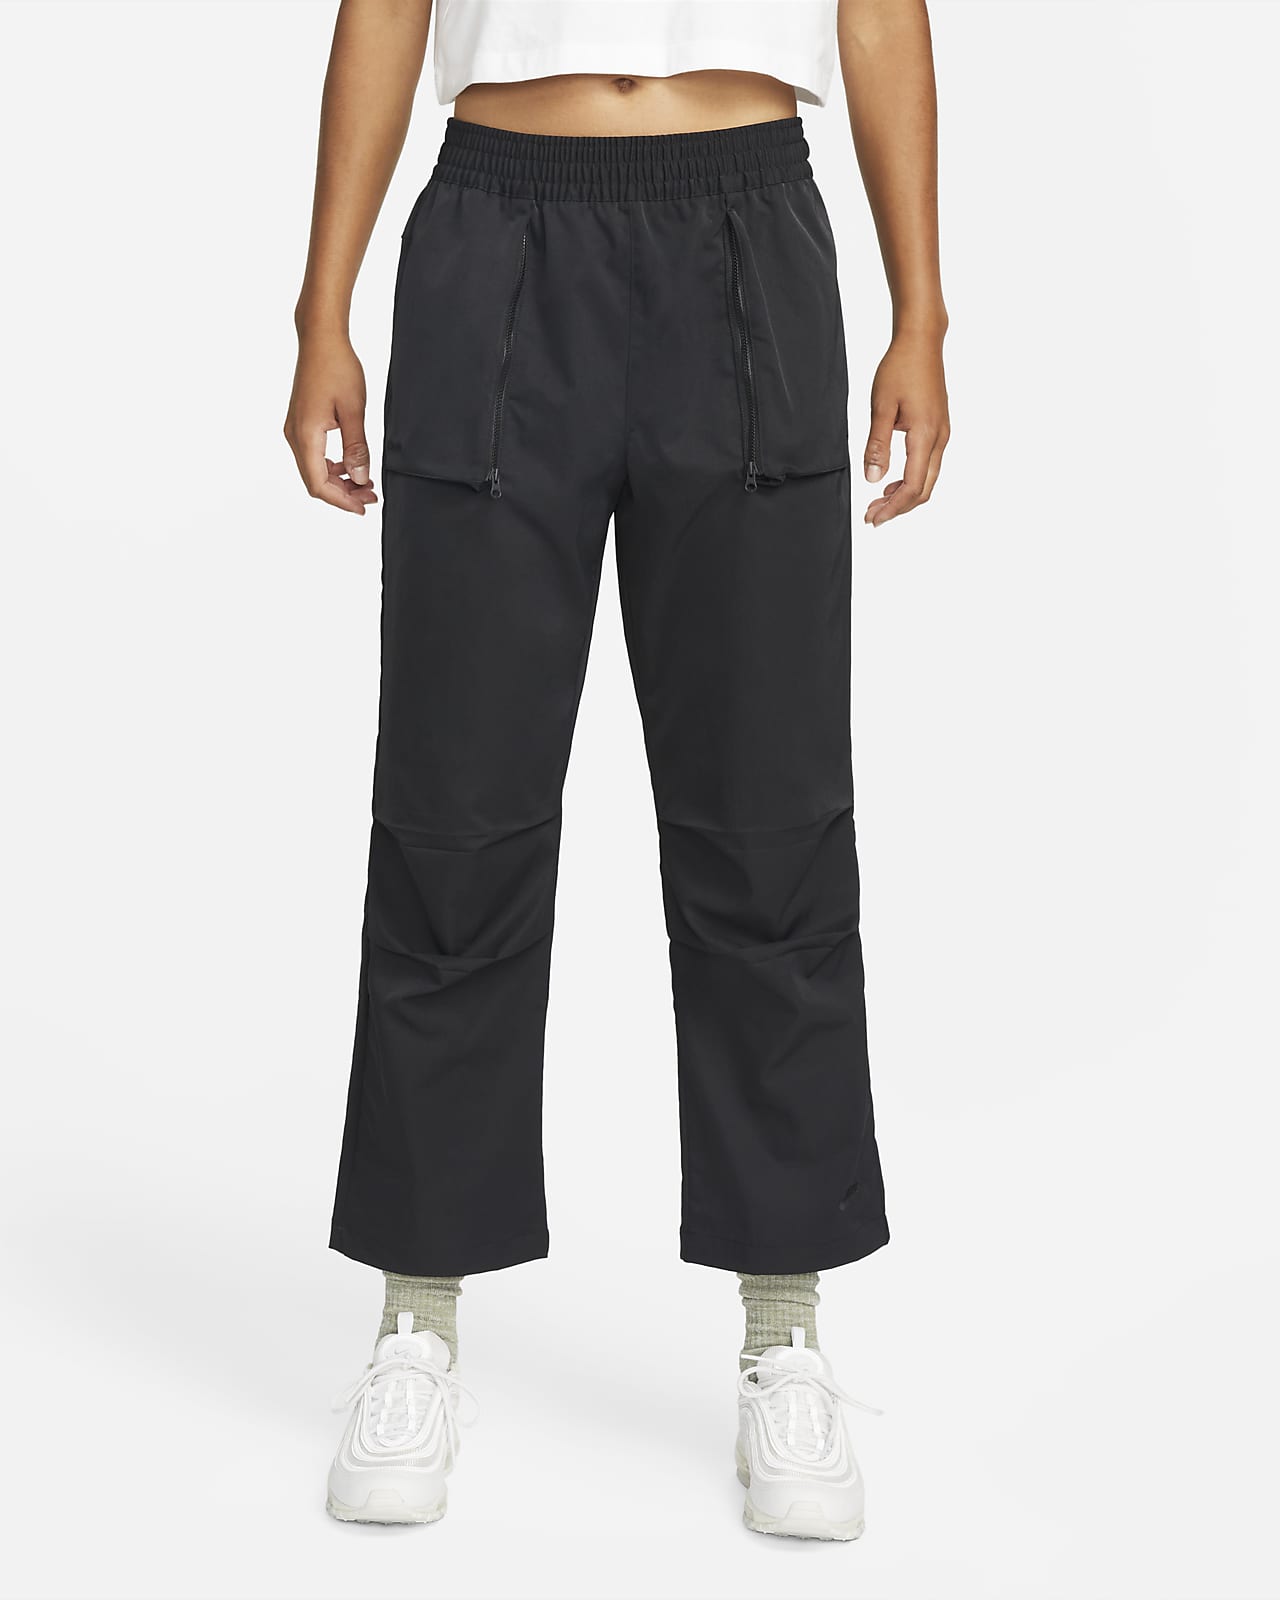 Nike Sportswear Dri-FIT Tech Pack Pantalons amb cintura alta de teixit Woven - Dona. ES